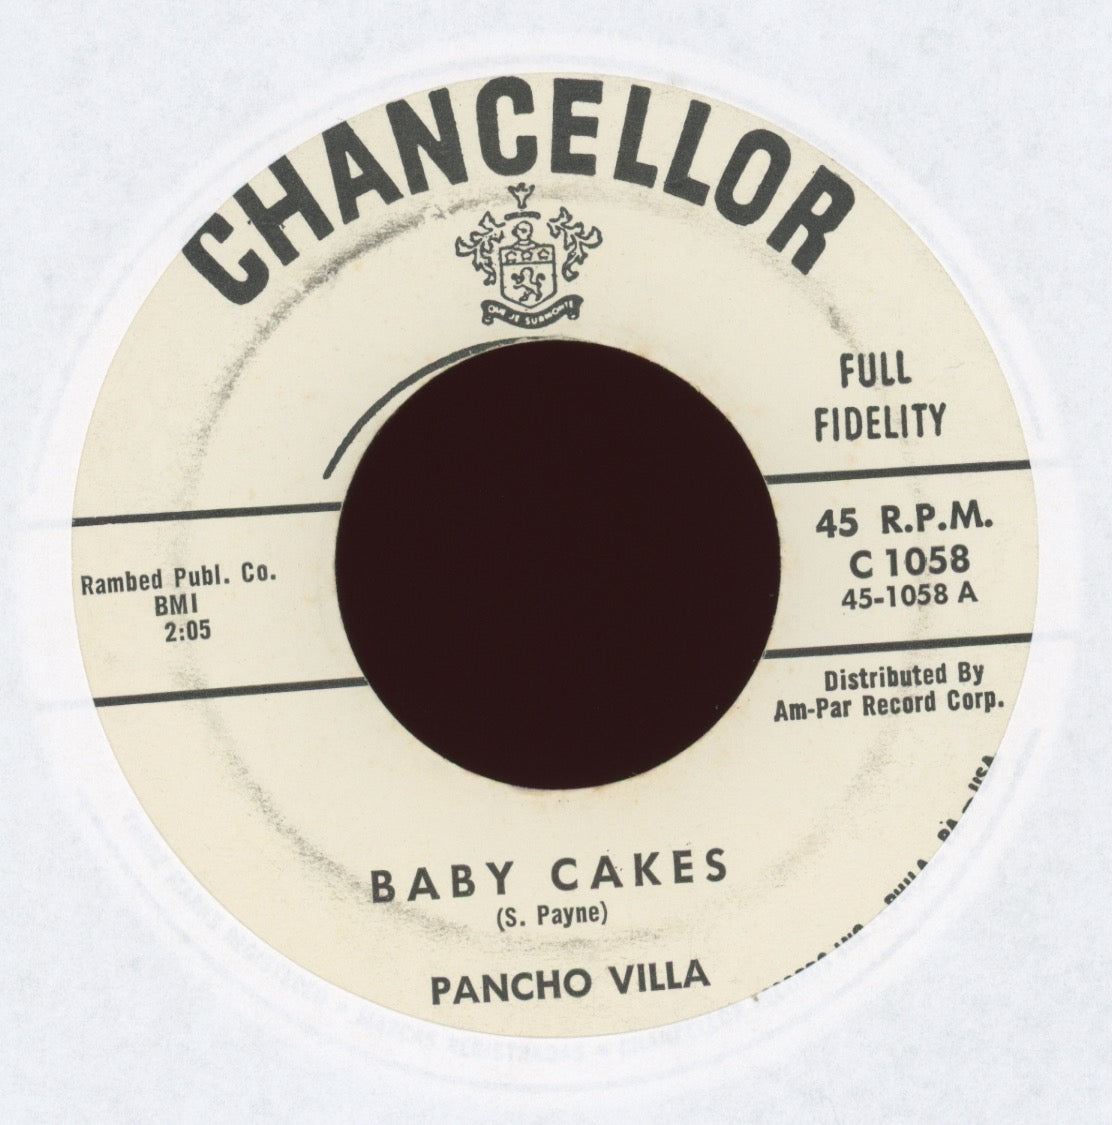 Pancho Villa - Baby Cakes on Chancellor